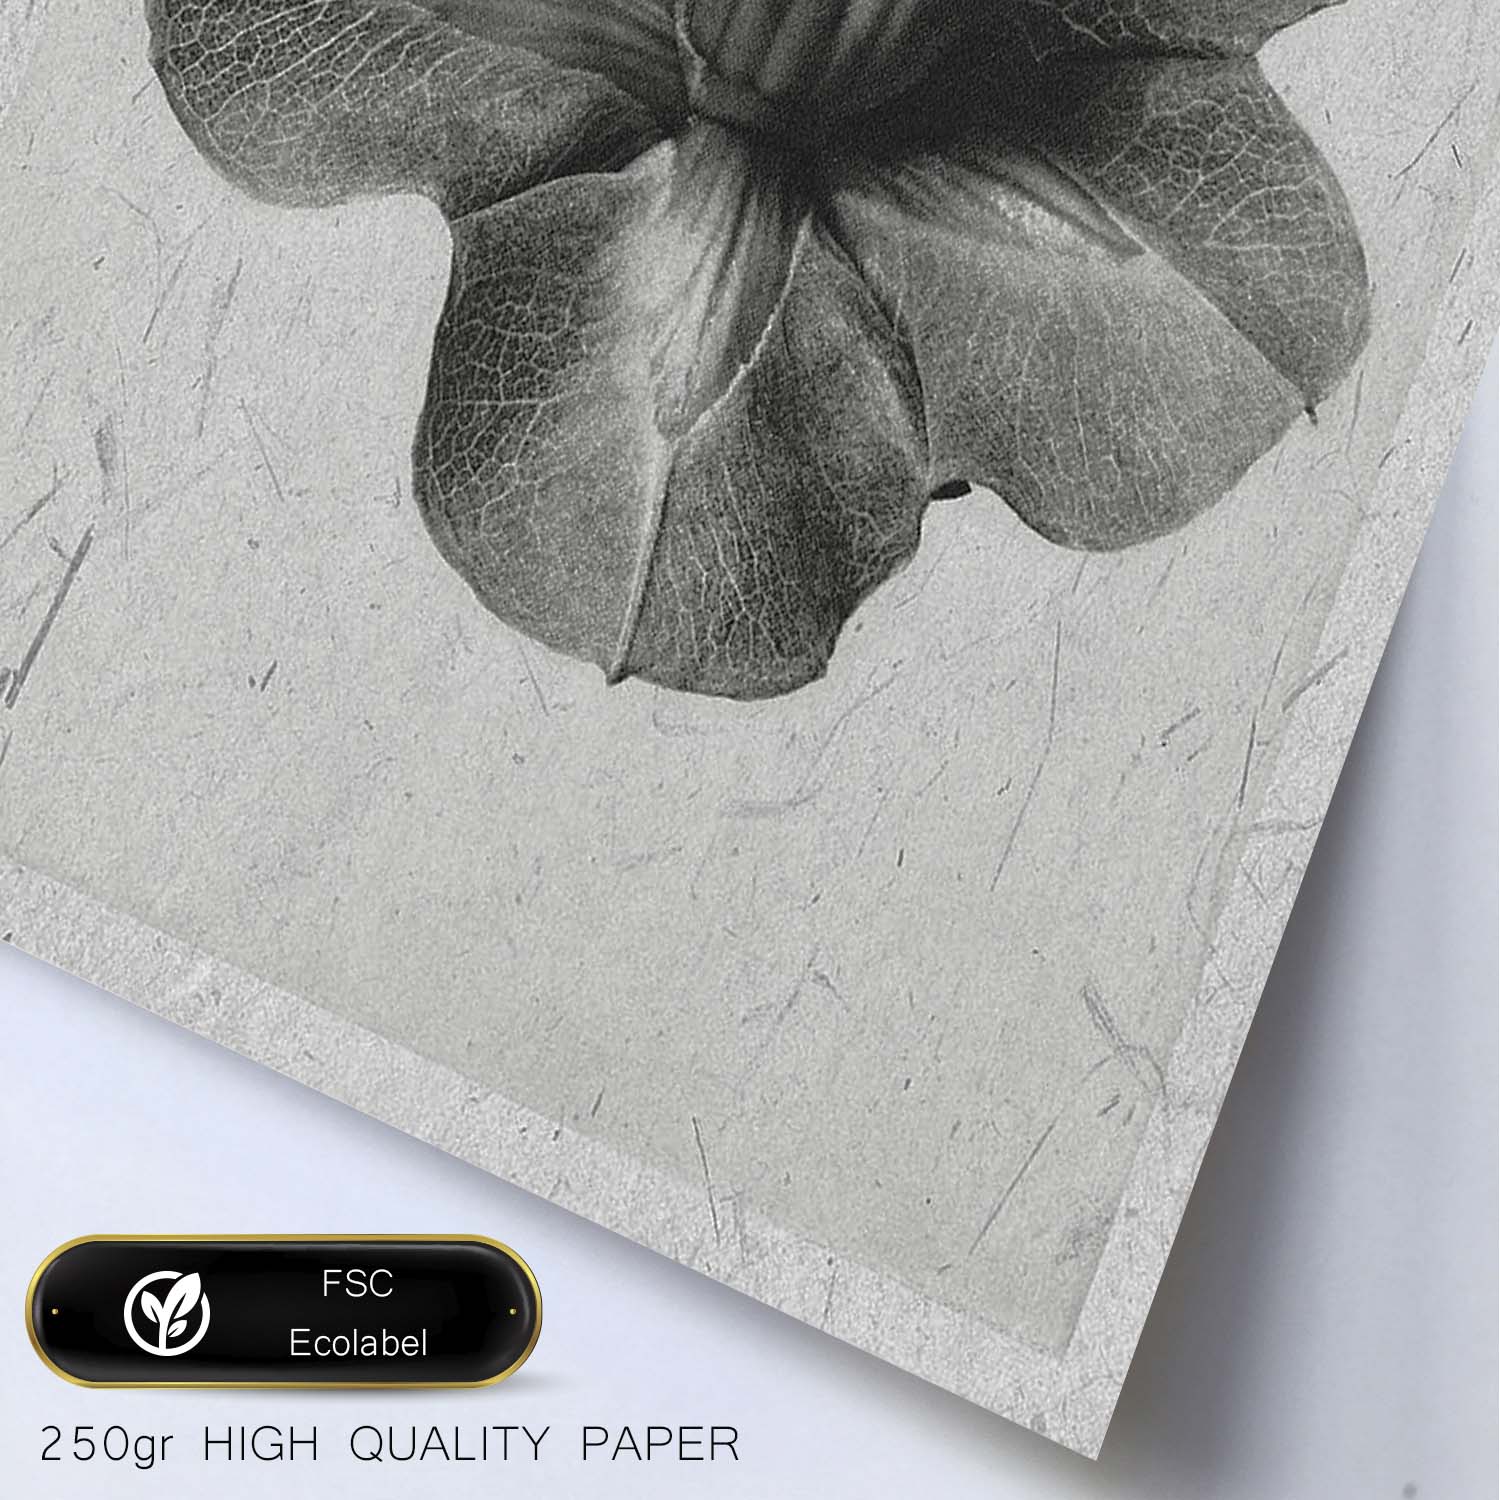 Lámina Planta blanco y negro 13. Pósters con ilustraciones de flores y plantas en tonos grises.-Artwork-Nacnic-Nacnic Estudio SL